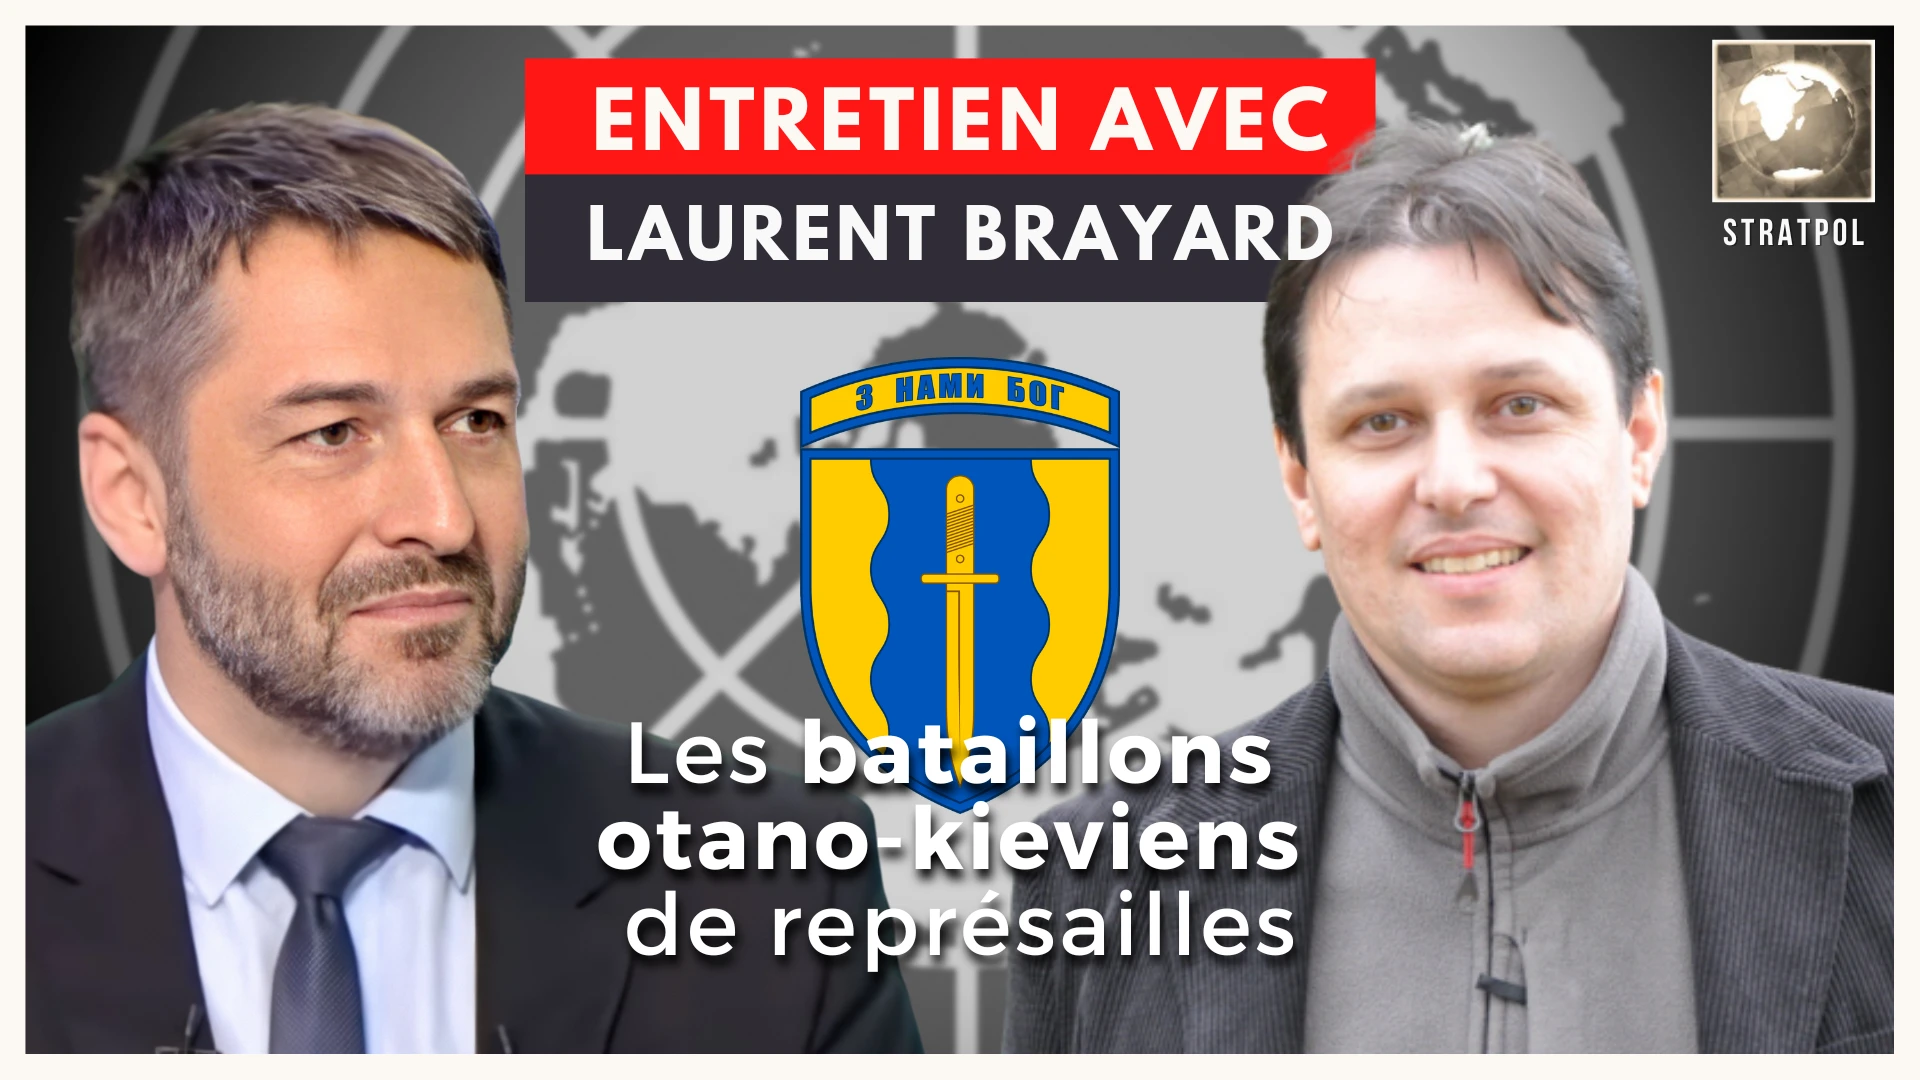 Les bataillons de représailles otano-kiéviens, entretien avec Laurent Brayard. 08.05.2023.